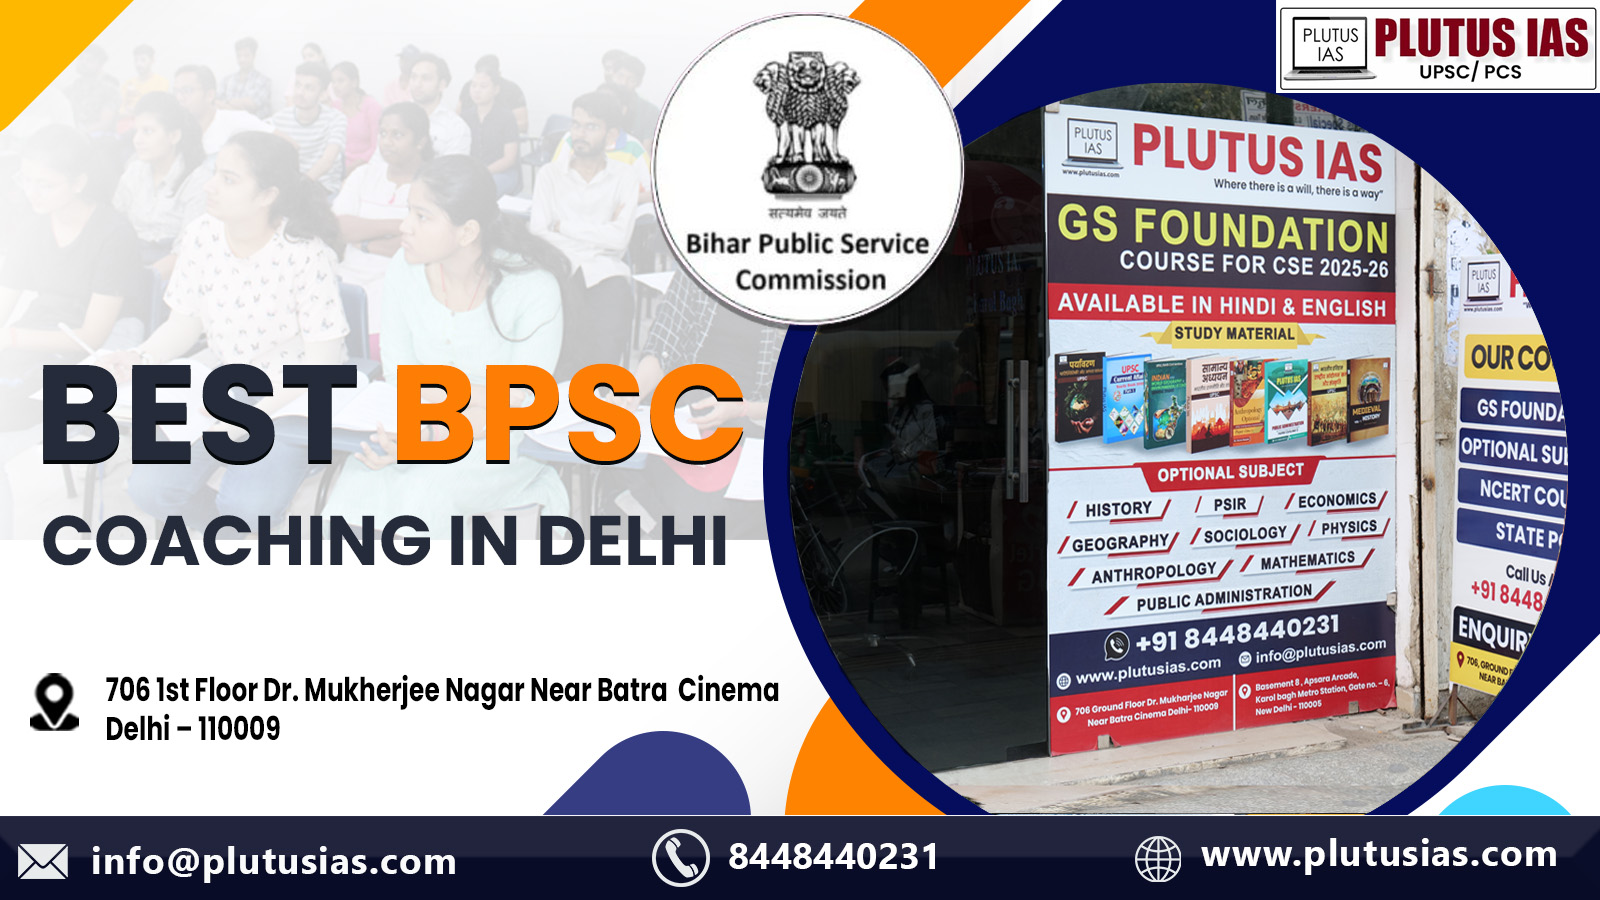 Plutus IAS Best BPSC Coaching in Delhi